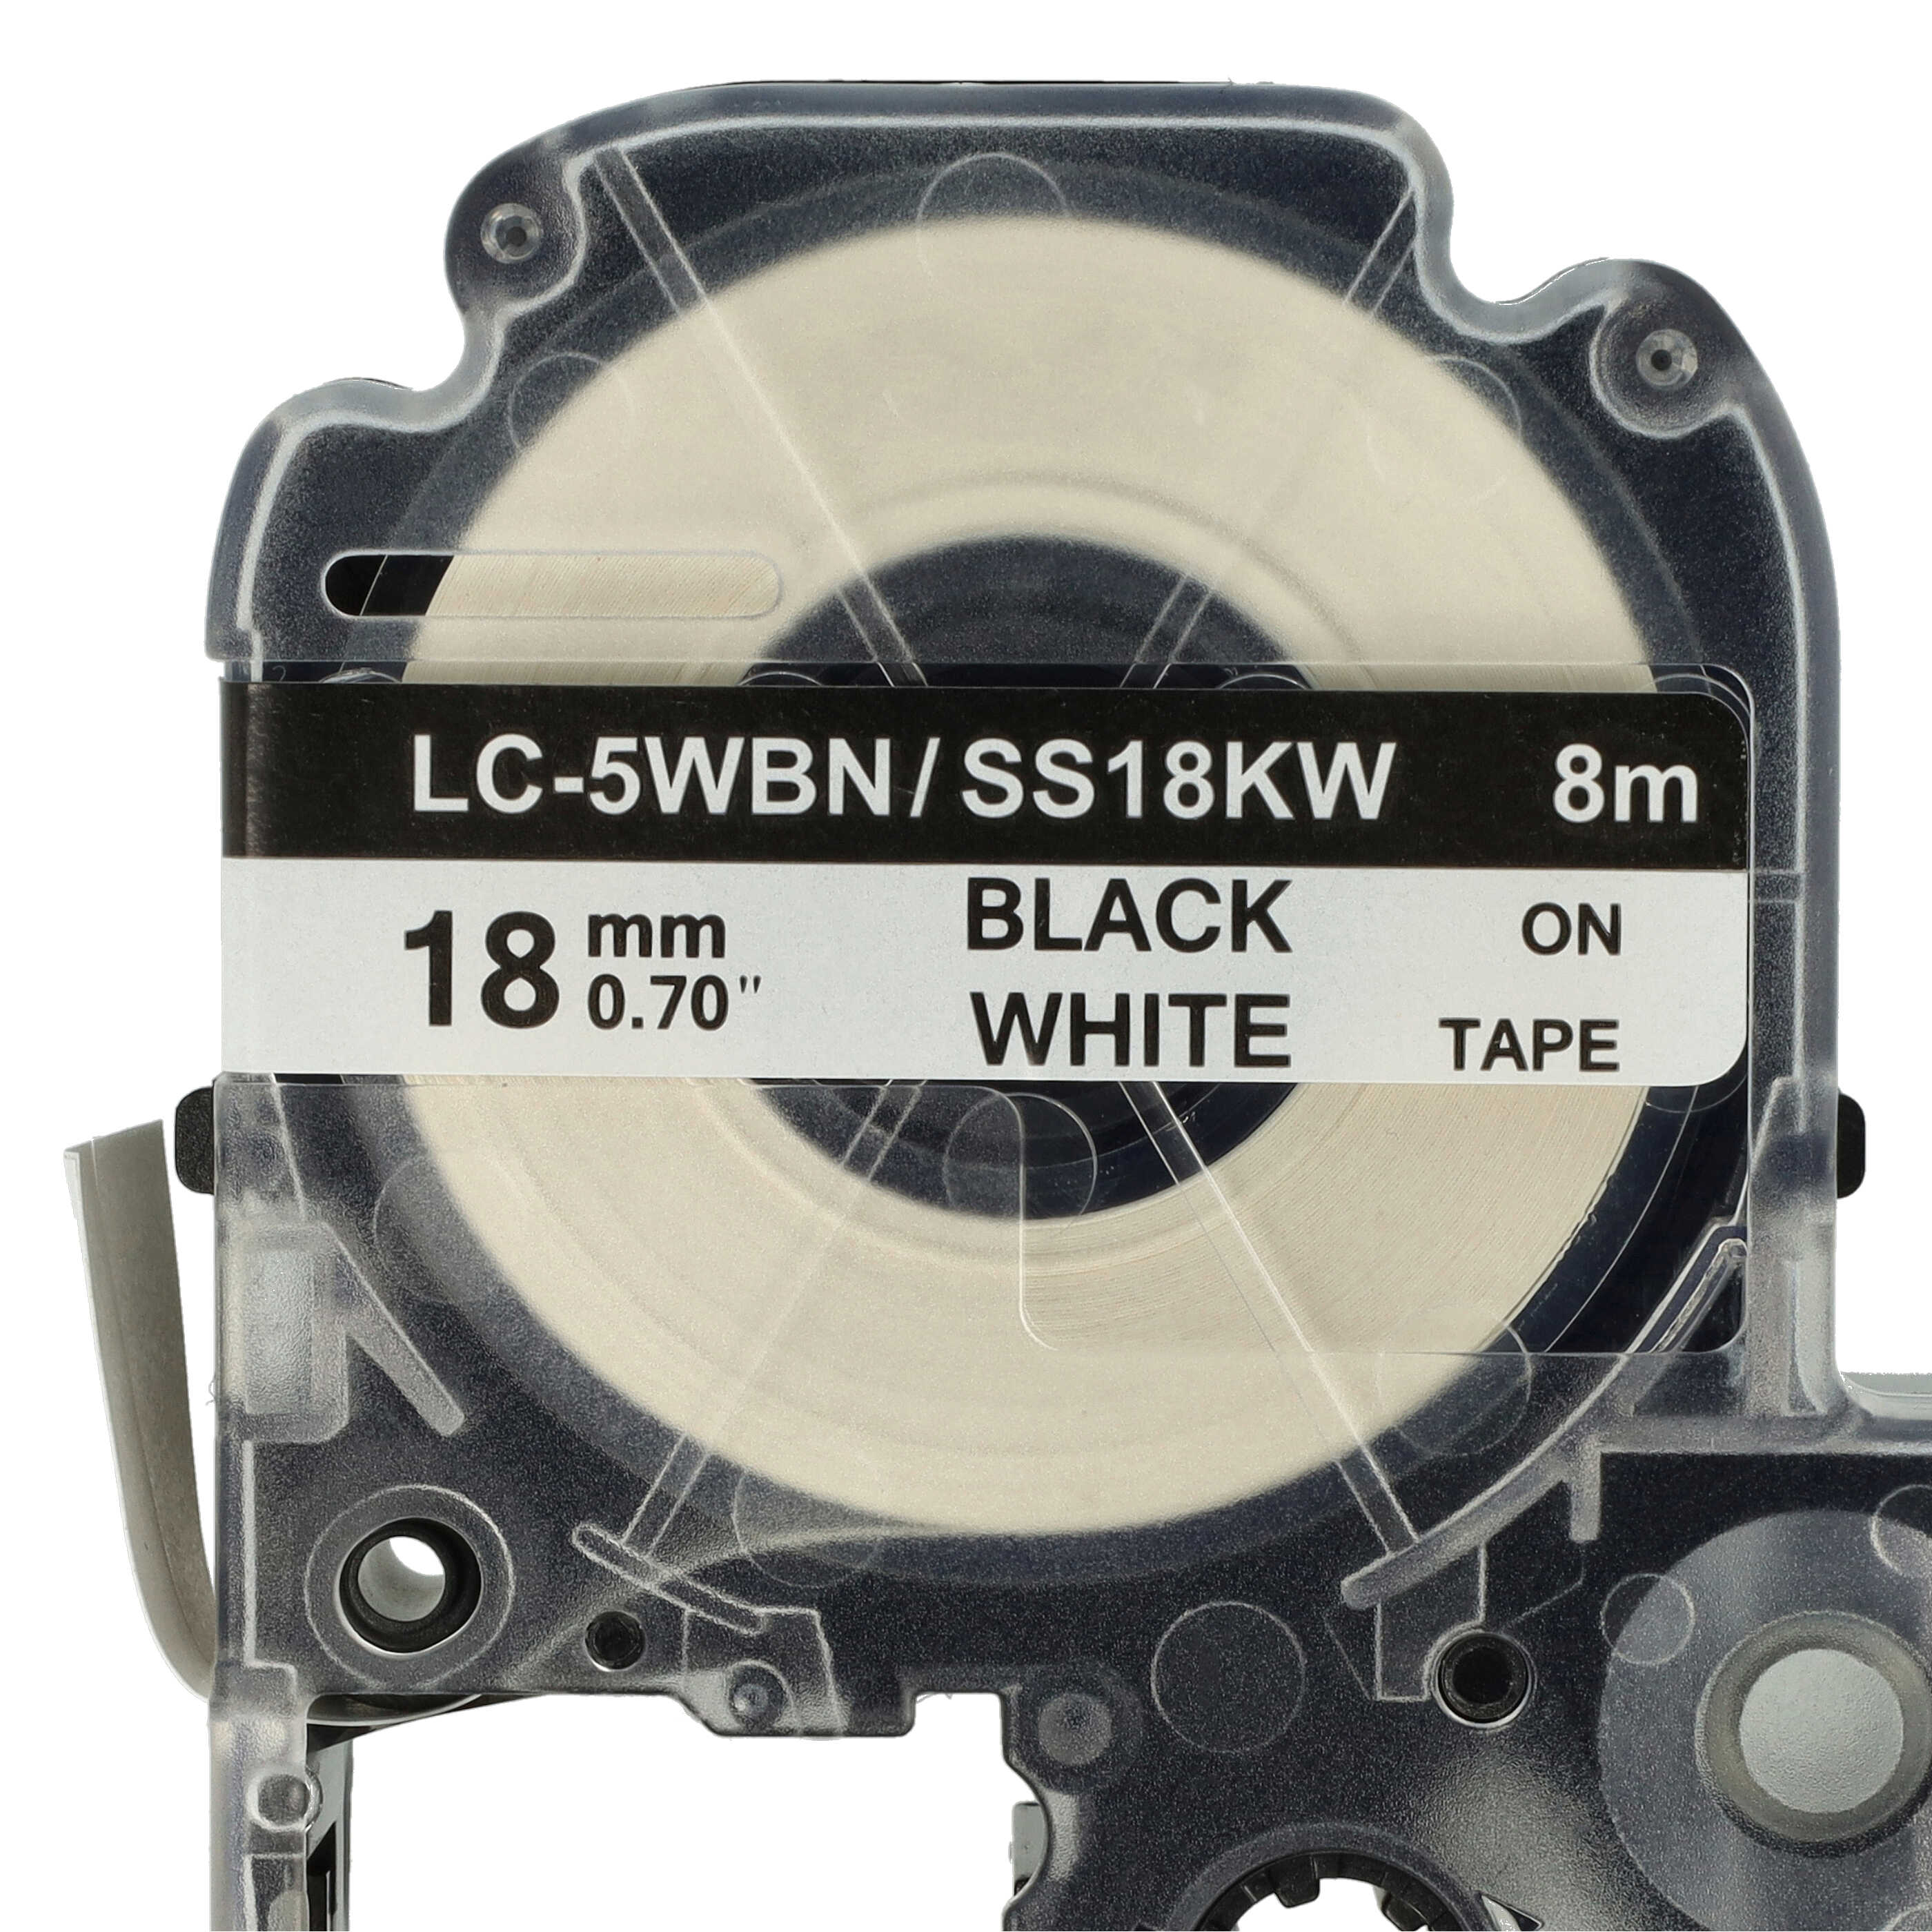 3x Taśma do etykiet zam. Epson SS18KW, LC-5WBN - 18mm, napis czarny / taśma biała